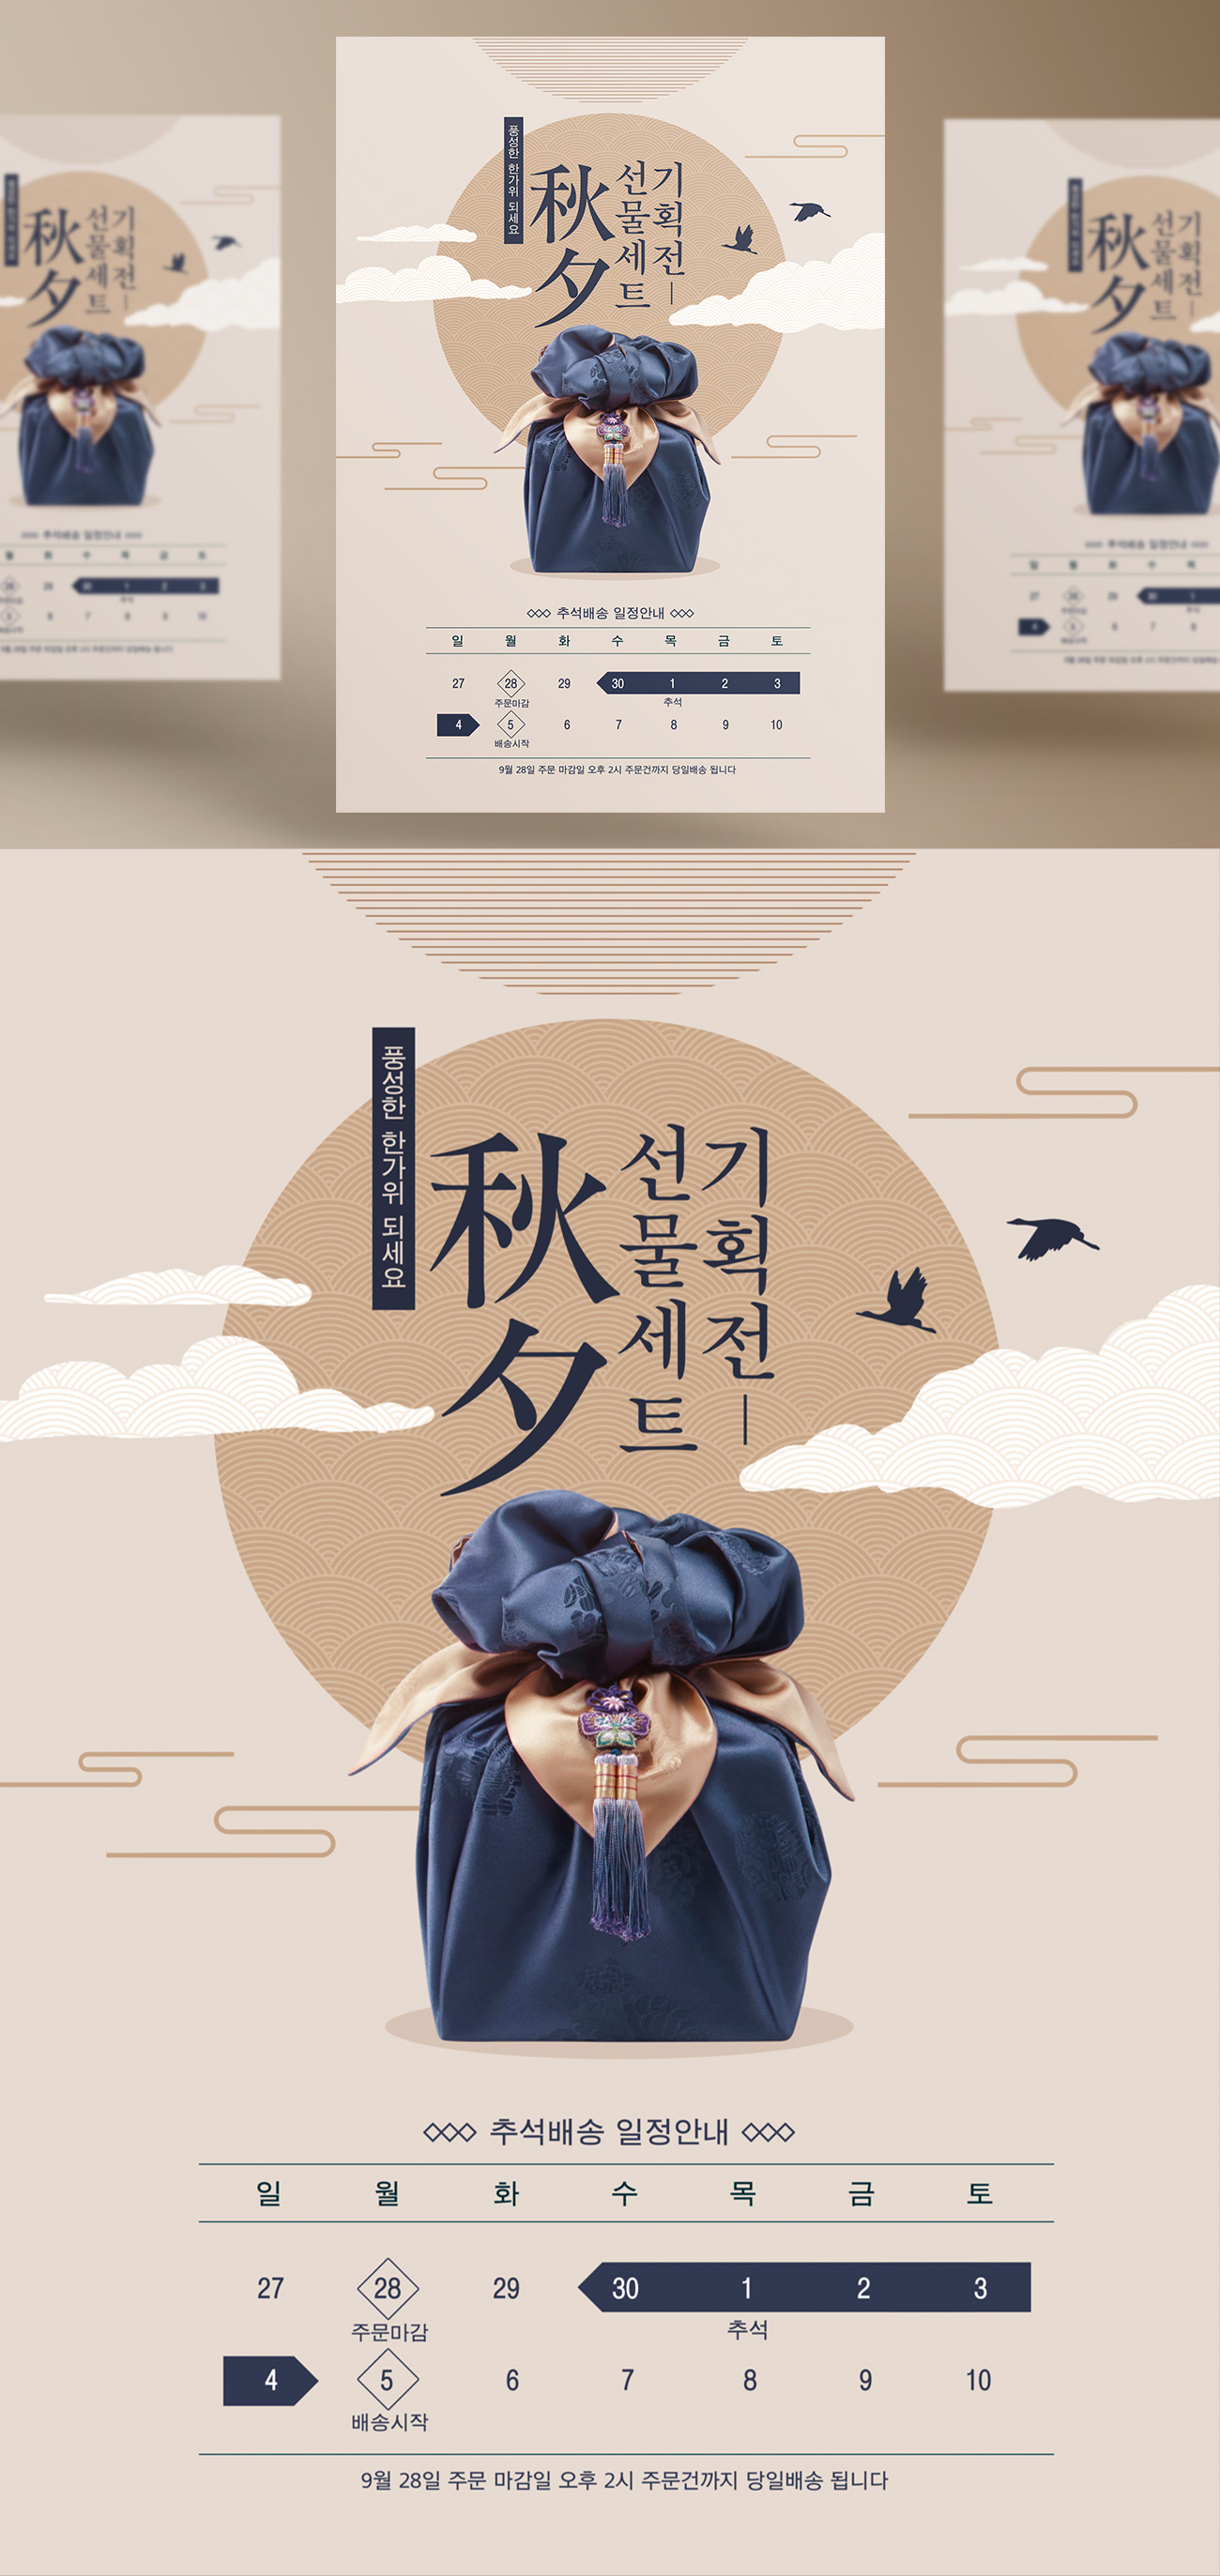 中式东方中国风日式中秋节放假通知快递物流通知海报PSD模板